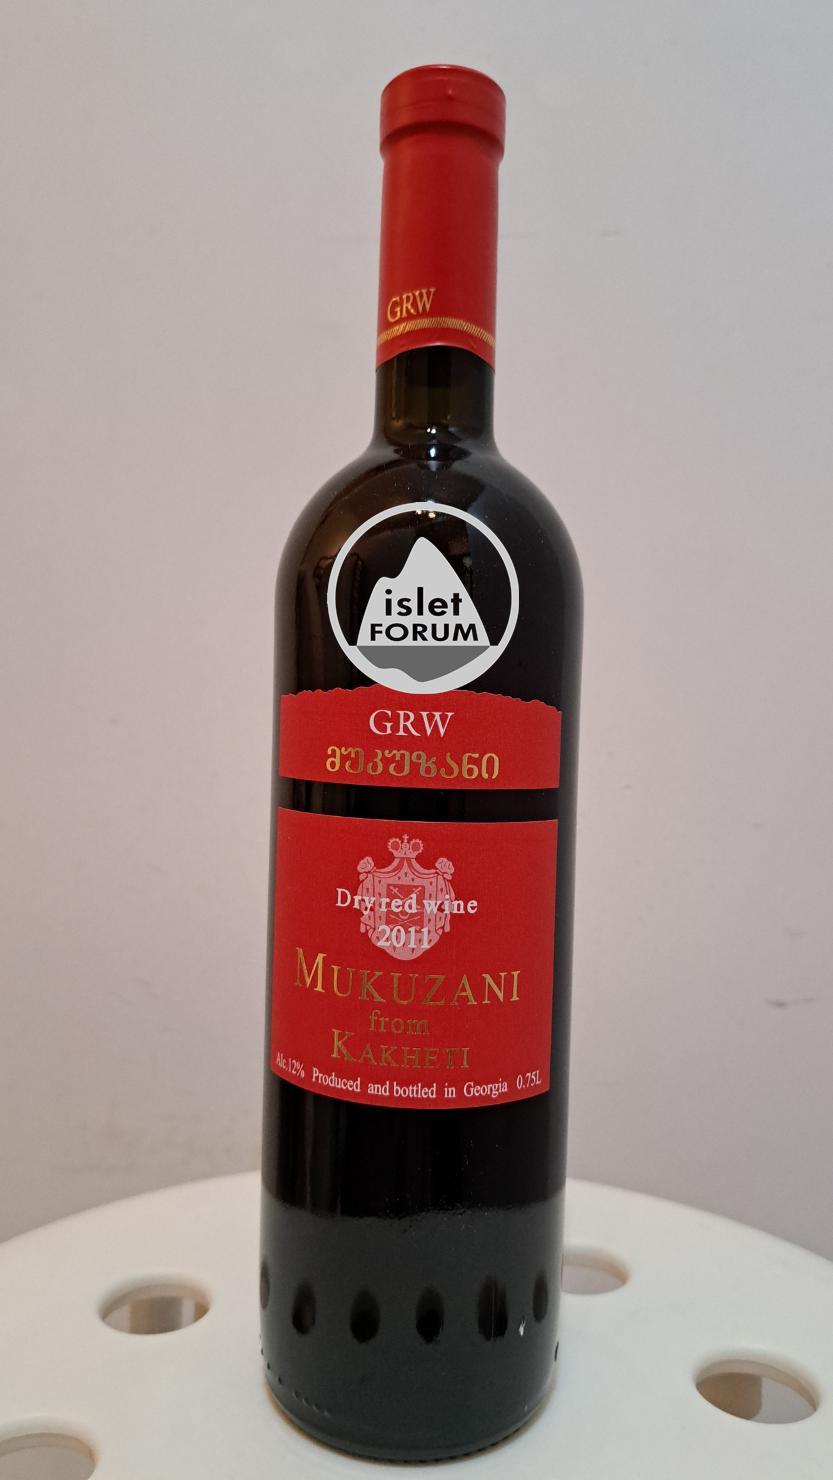 GRW winery Mukuzani Dry red wine 2011 from Kakheti - Georgian wine (1).jpg